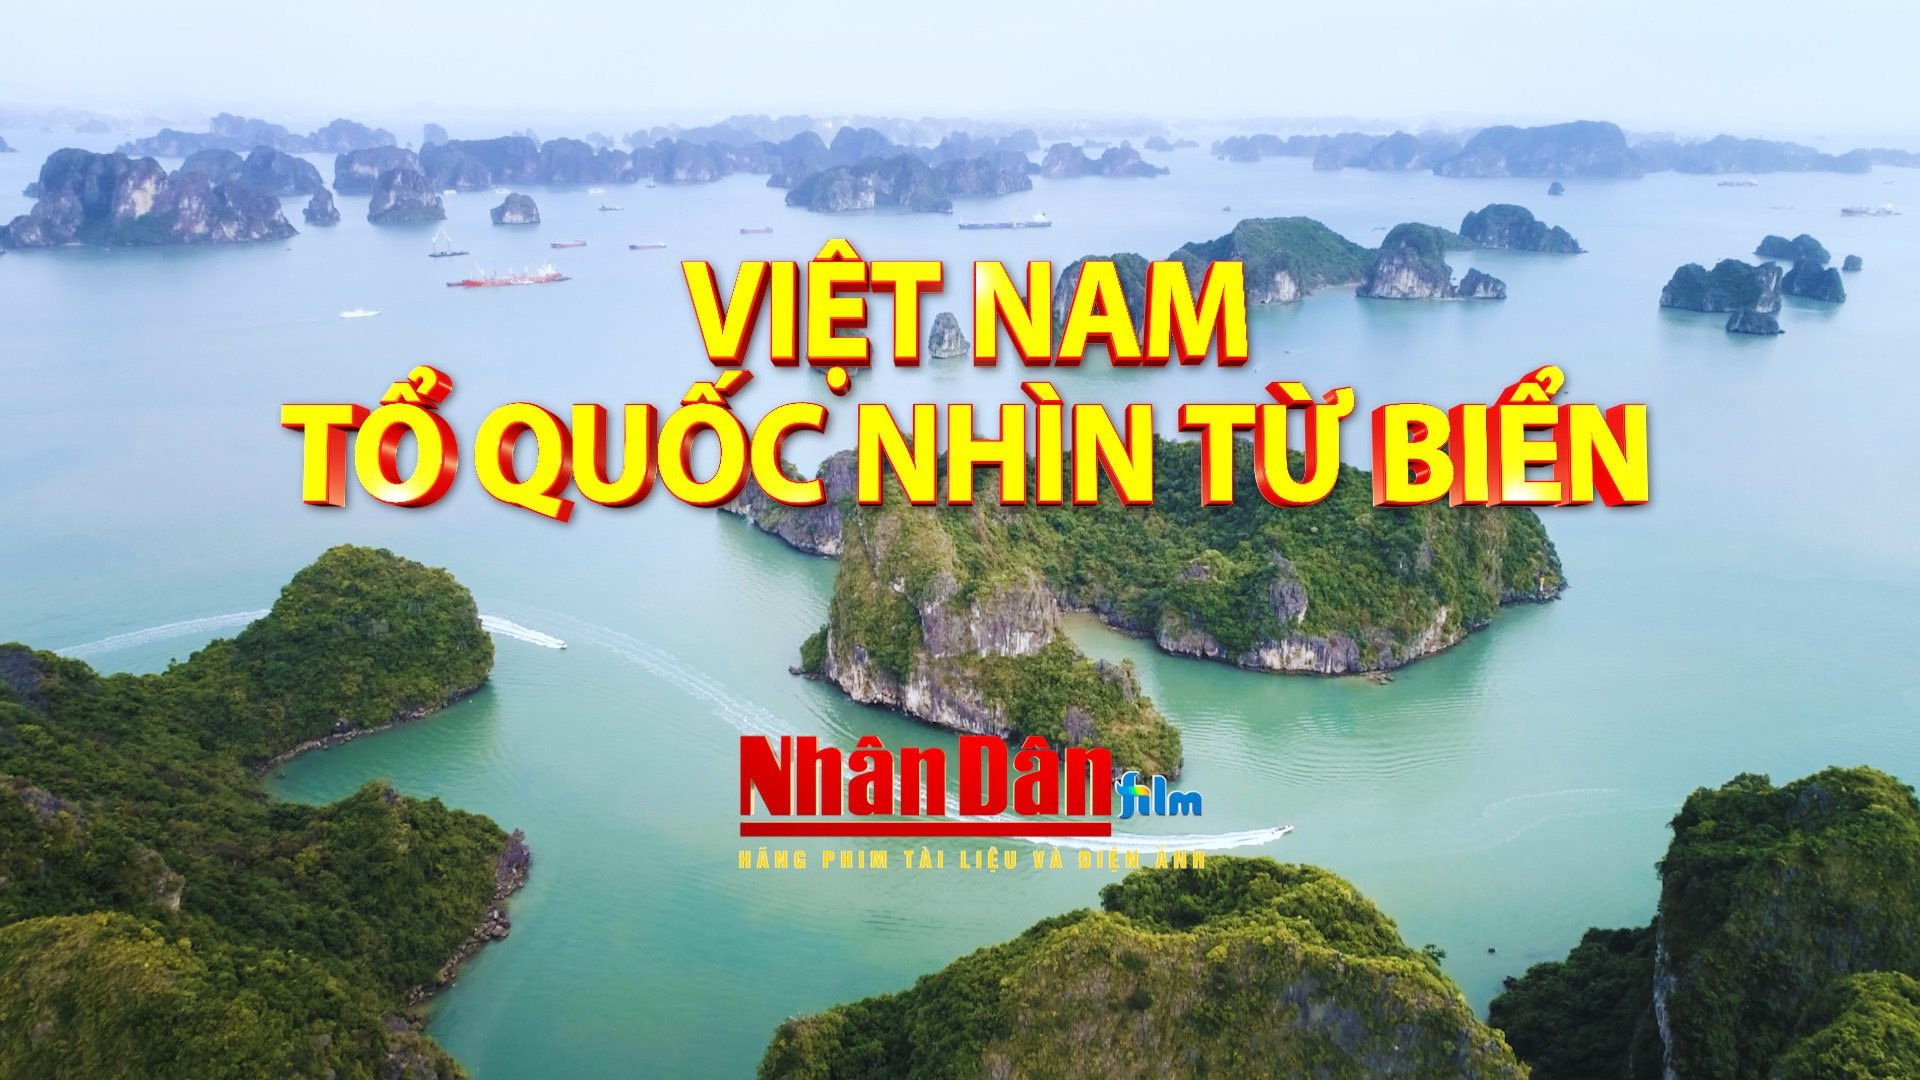 Phát sóng rộng rãi phim tài liệu “Việt Nam – Tổ Quốc nhìn từ biển”